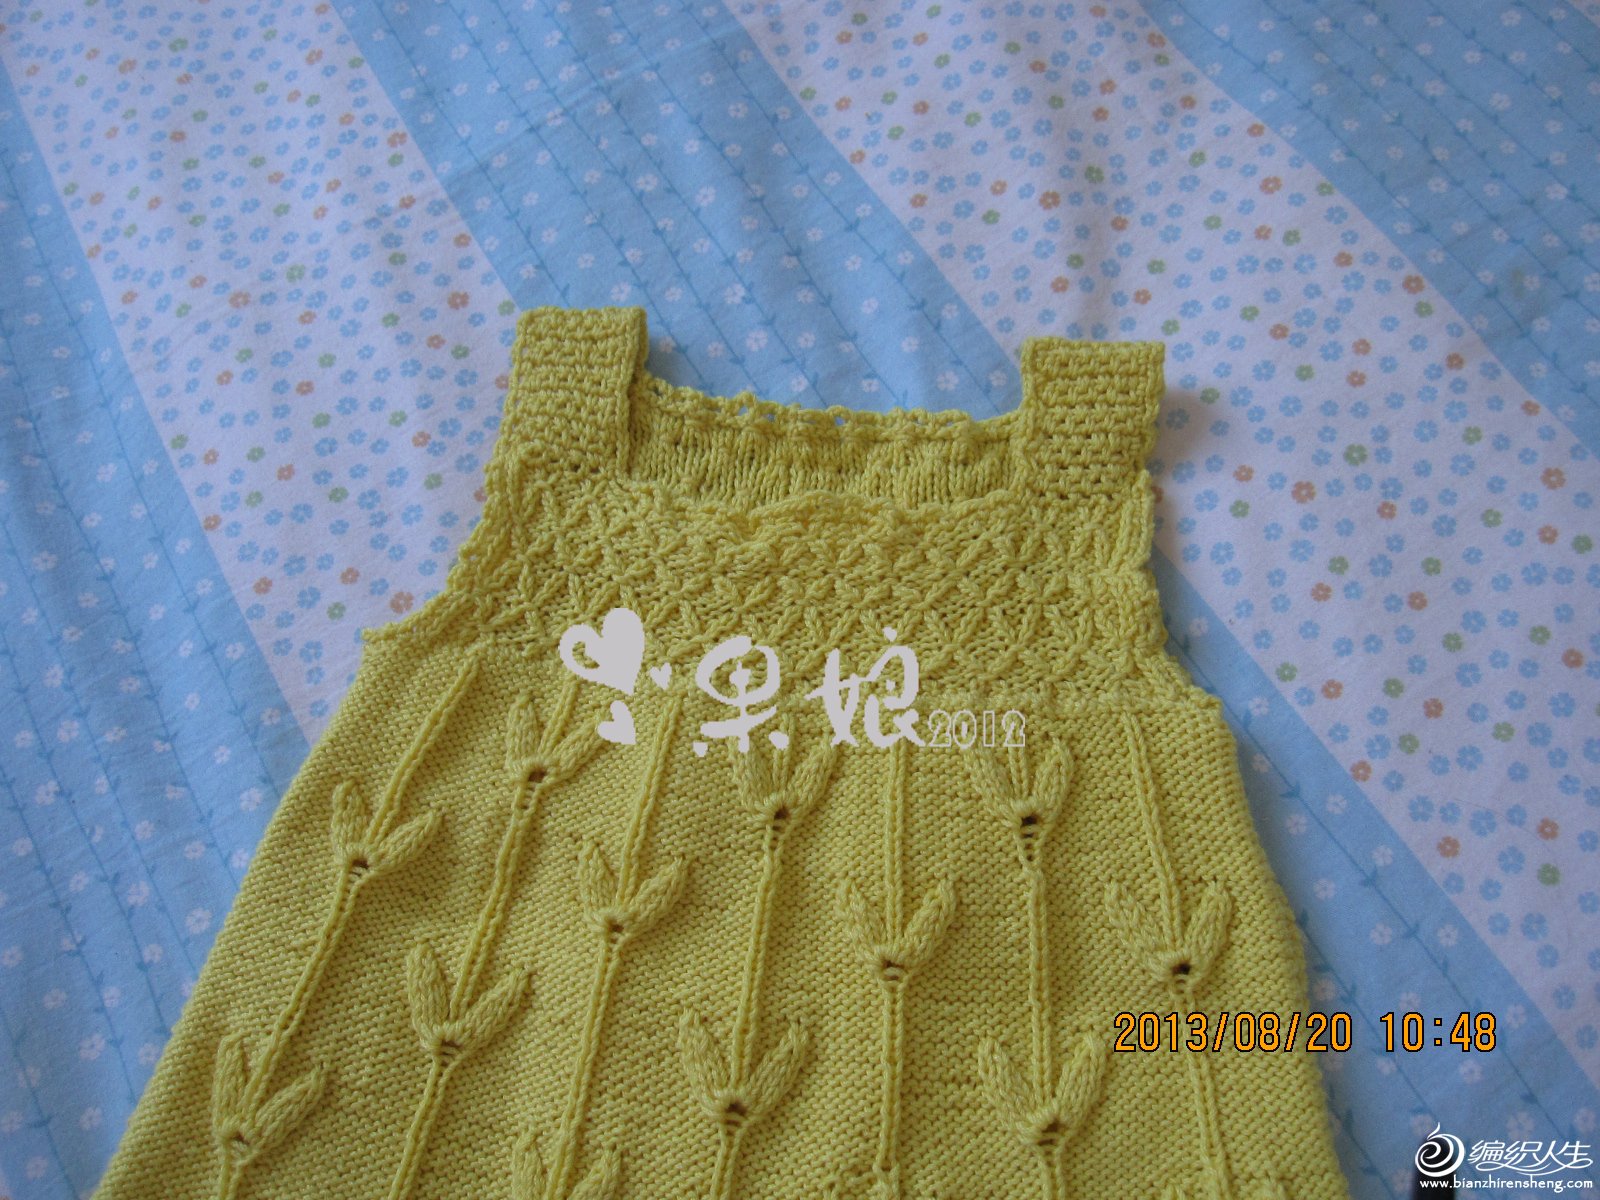 果娘2012作品 金黄色玉米花背心裙 1岁 新加部分清晰